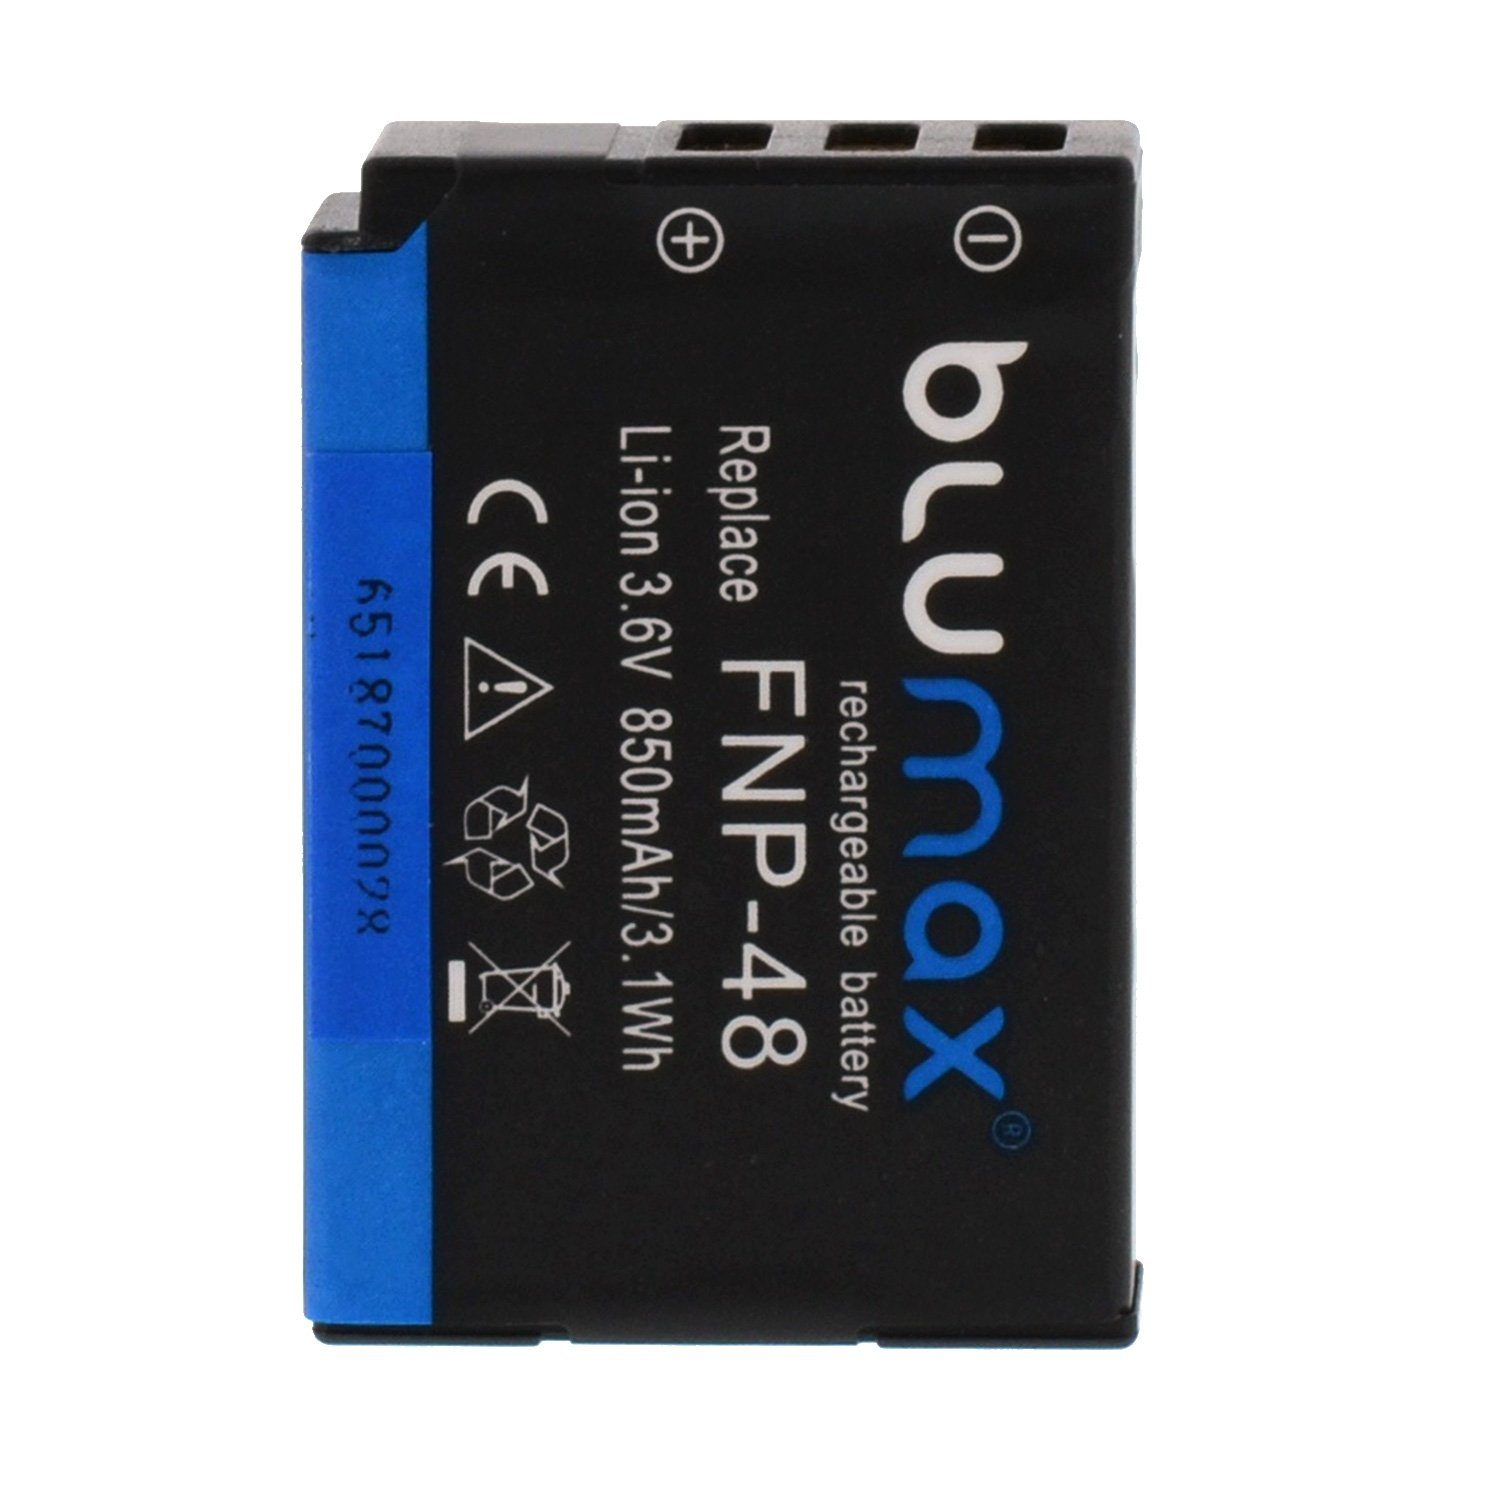 Akku mAh Fuji für Blumax 850 passend (3,6V) Kamera-Akku NP-48